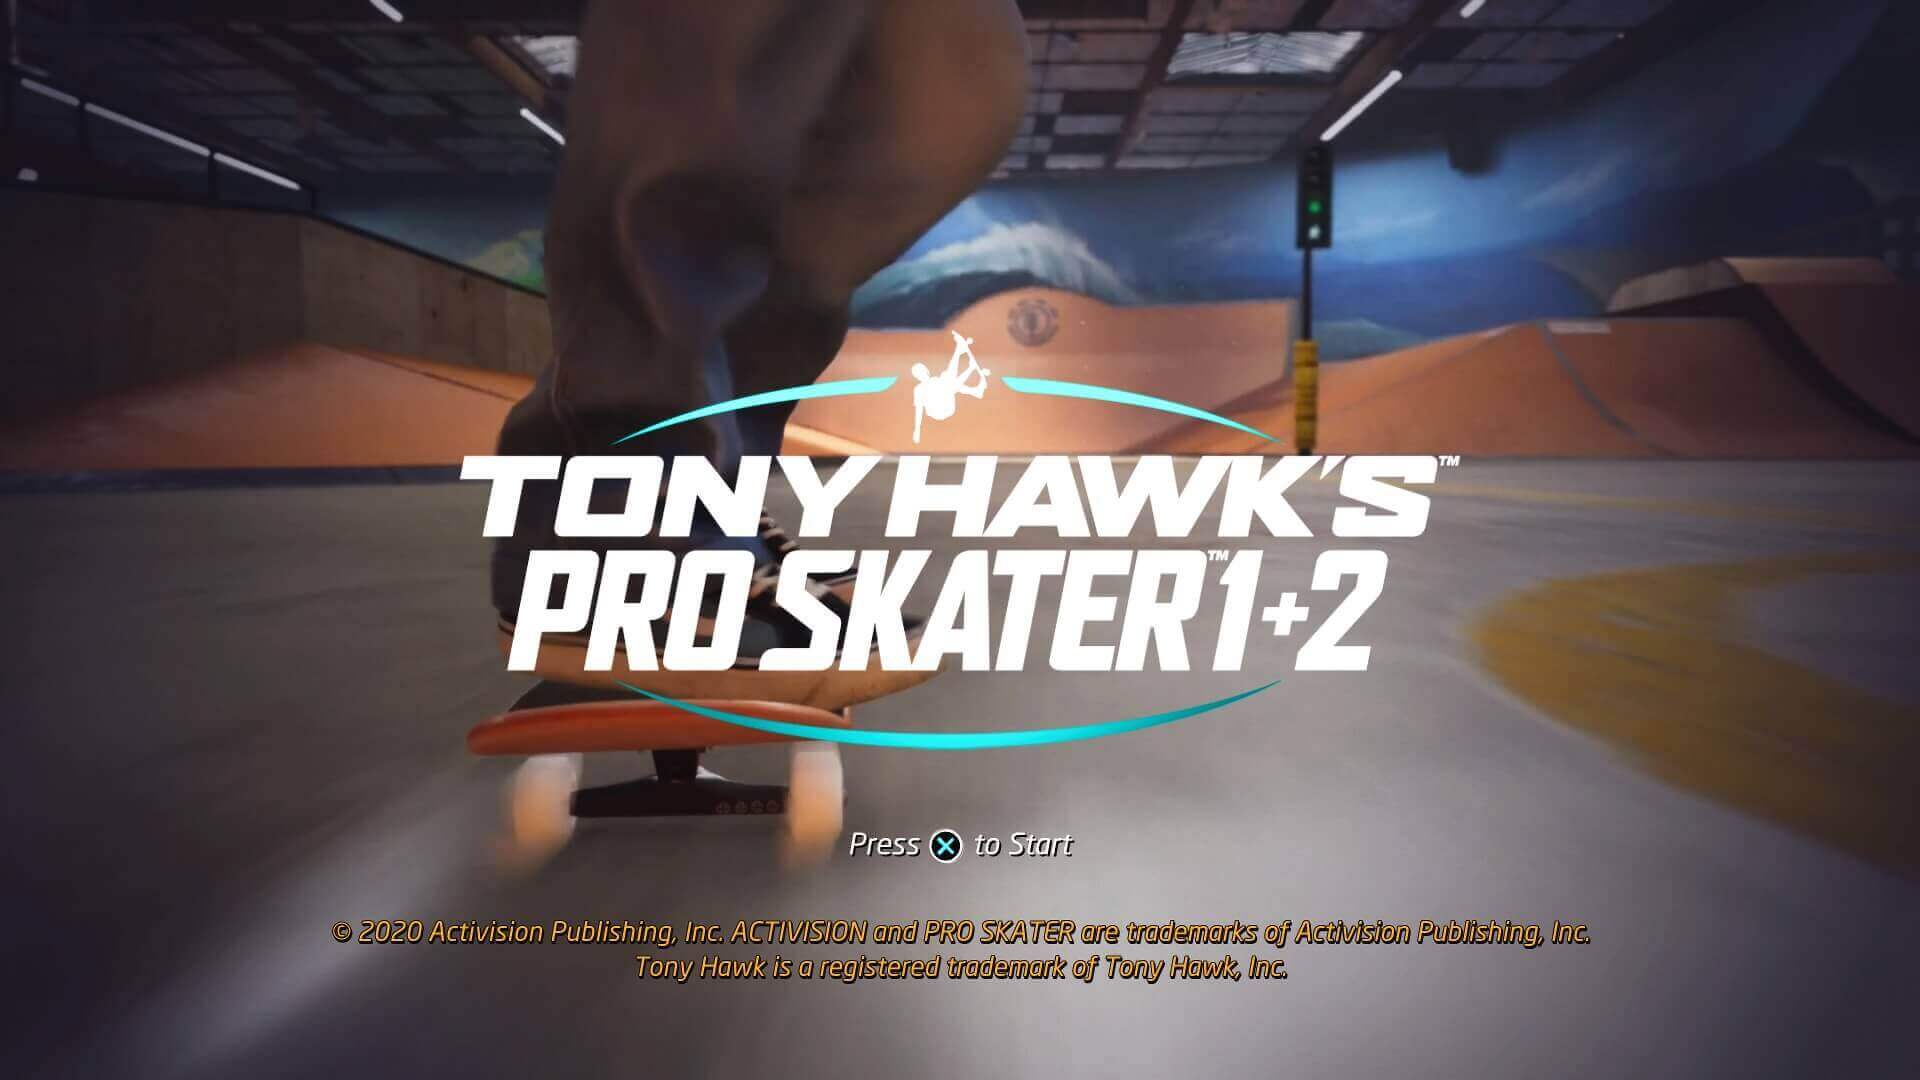 Tony Hawk's Pro Skater 1+2 com Charlie Brown Jr, uma resenha